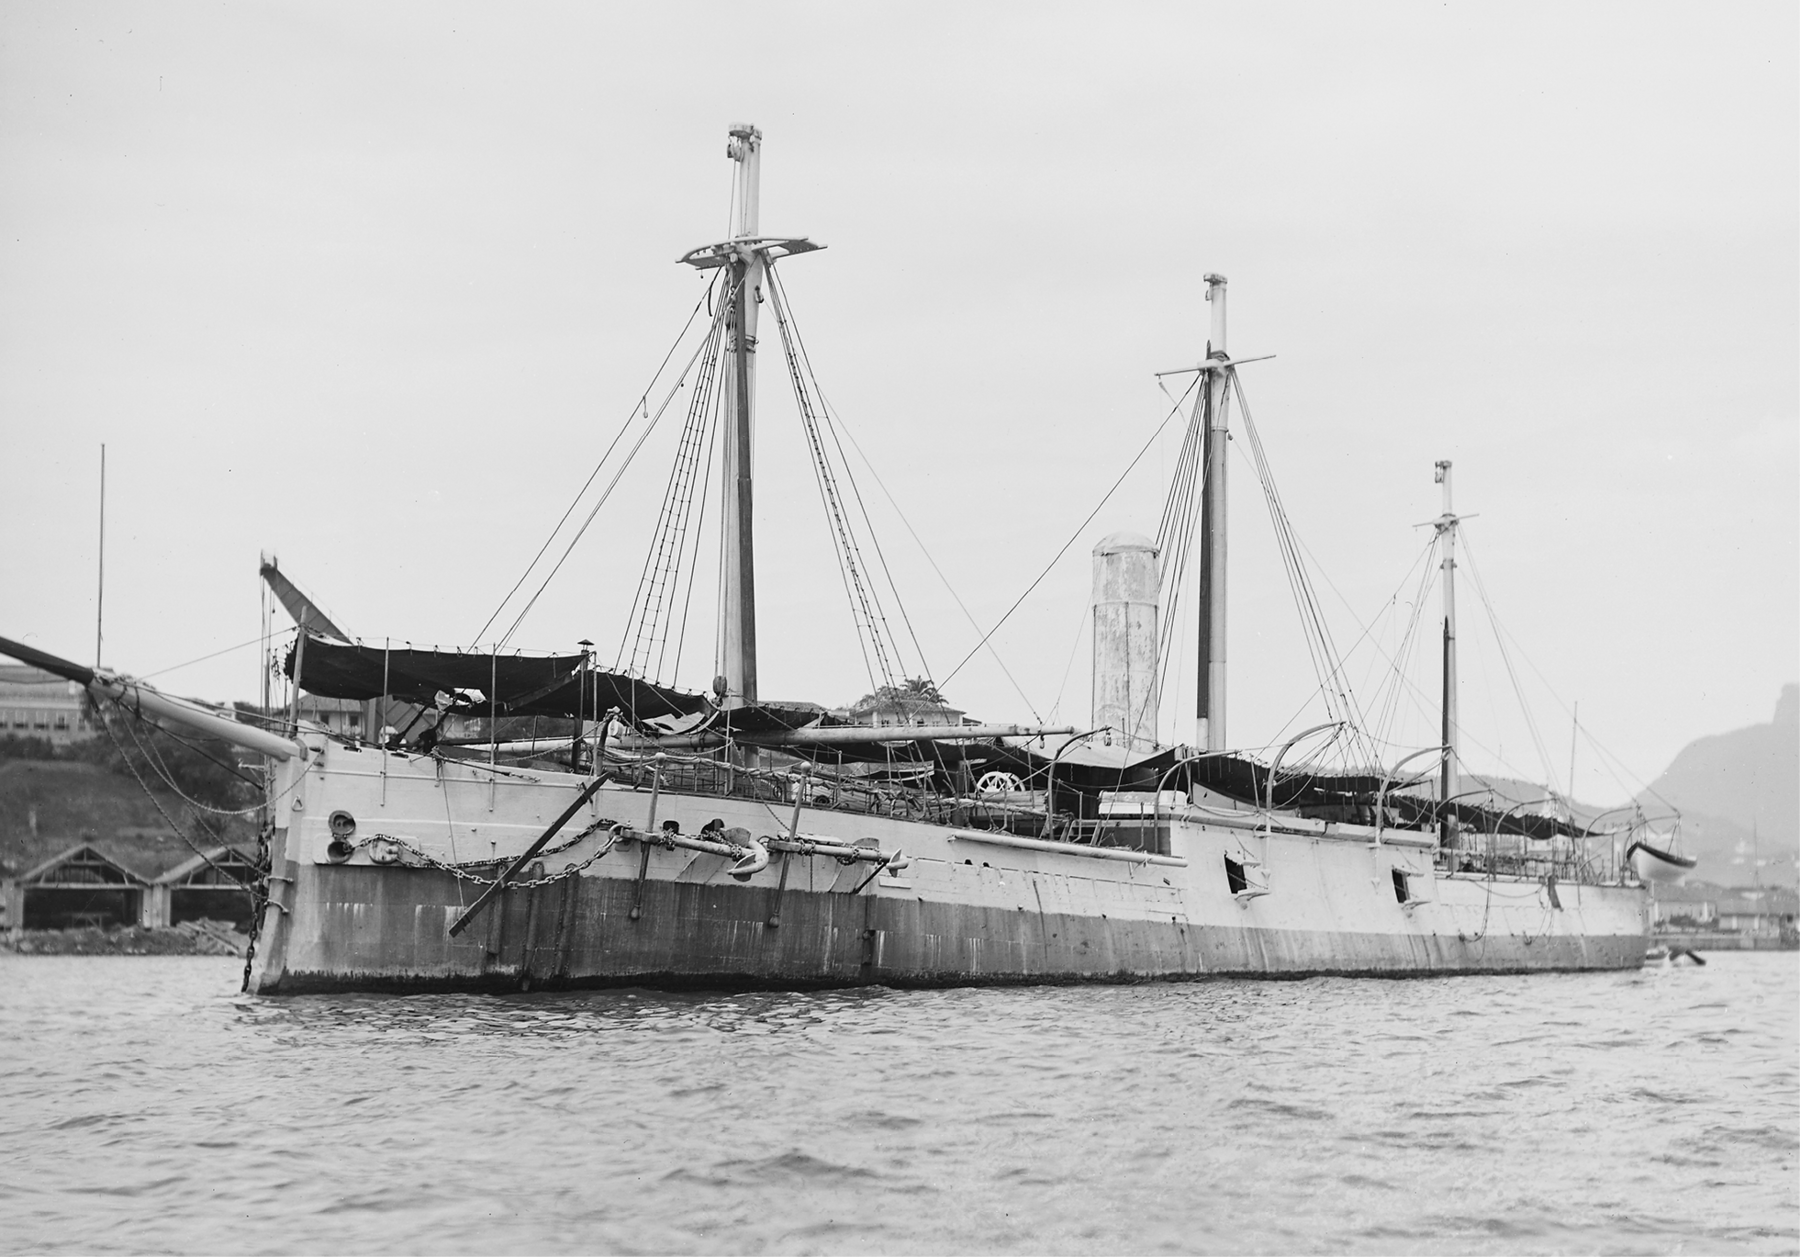 Fotografia em preto e branco. Um navio sobre águas. Possui três mastros, com diversas cordas presas ao topo.